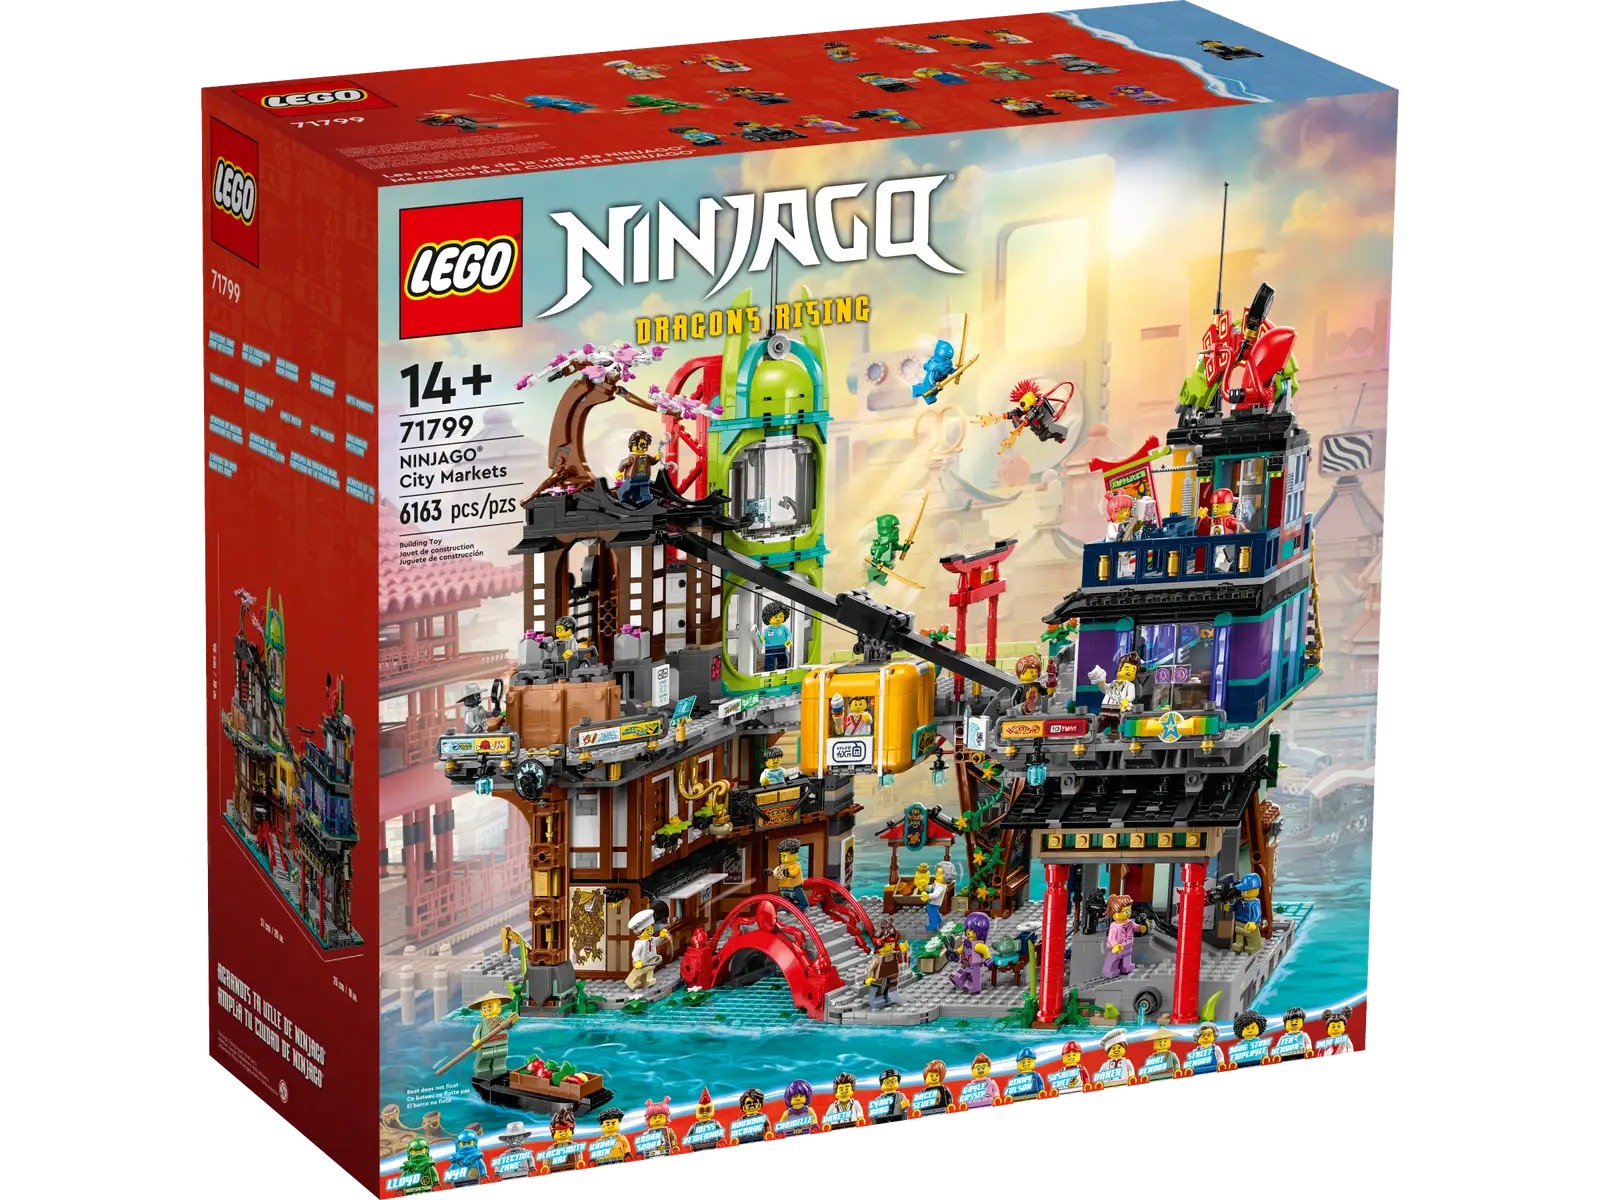 LEGO Ninjago City Markets Set 71799